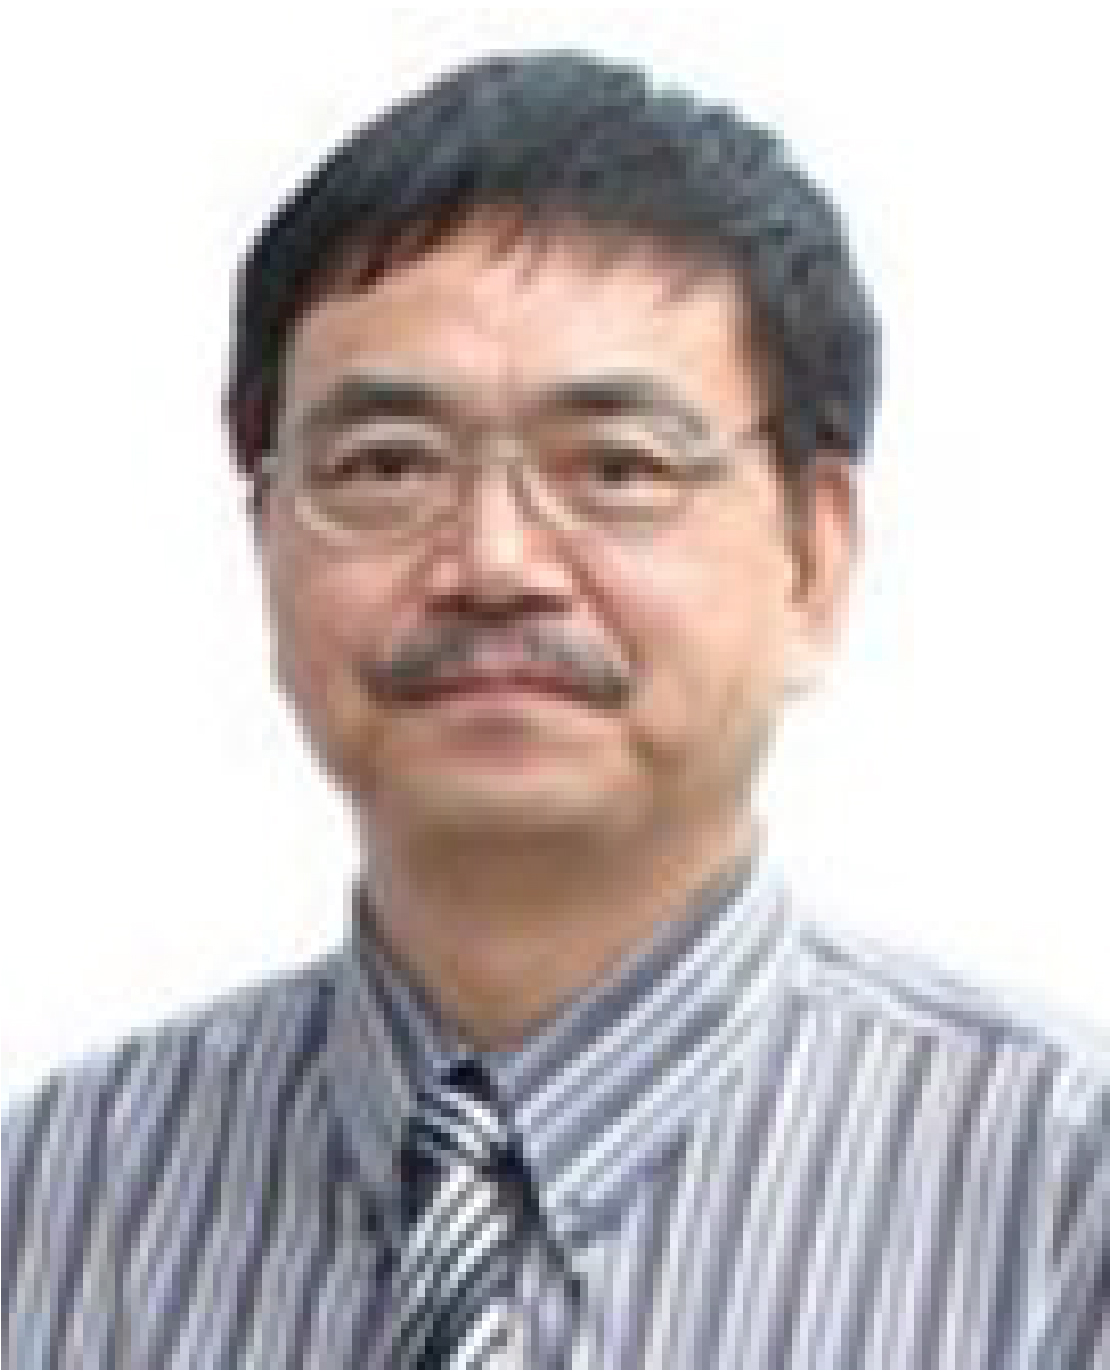 Prof. Sam Zhang